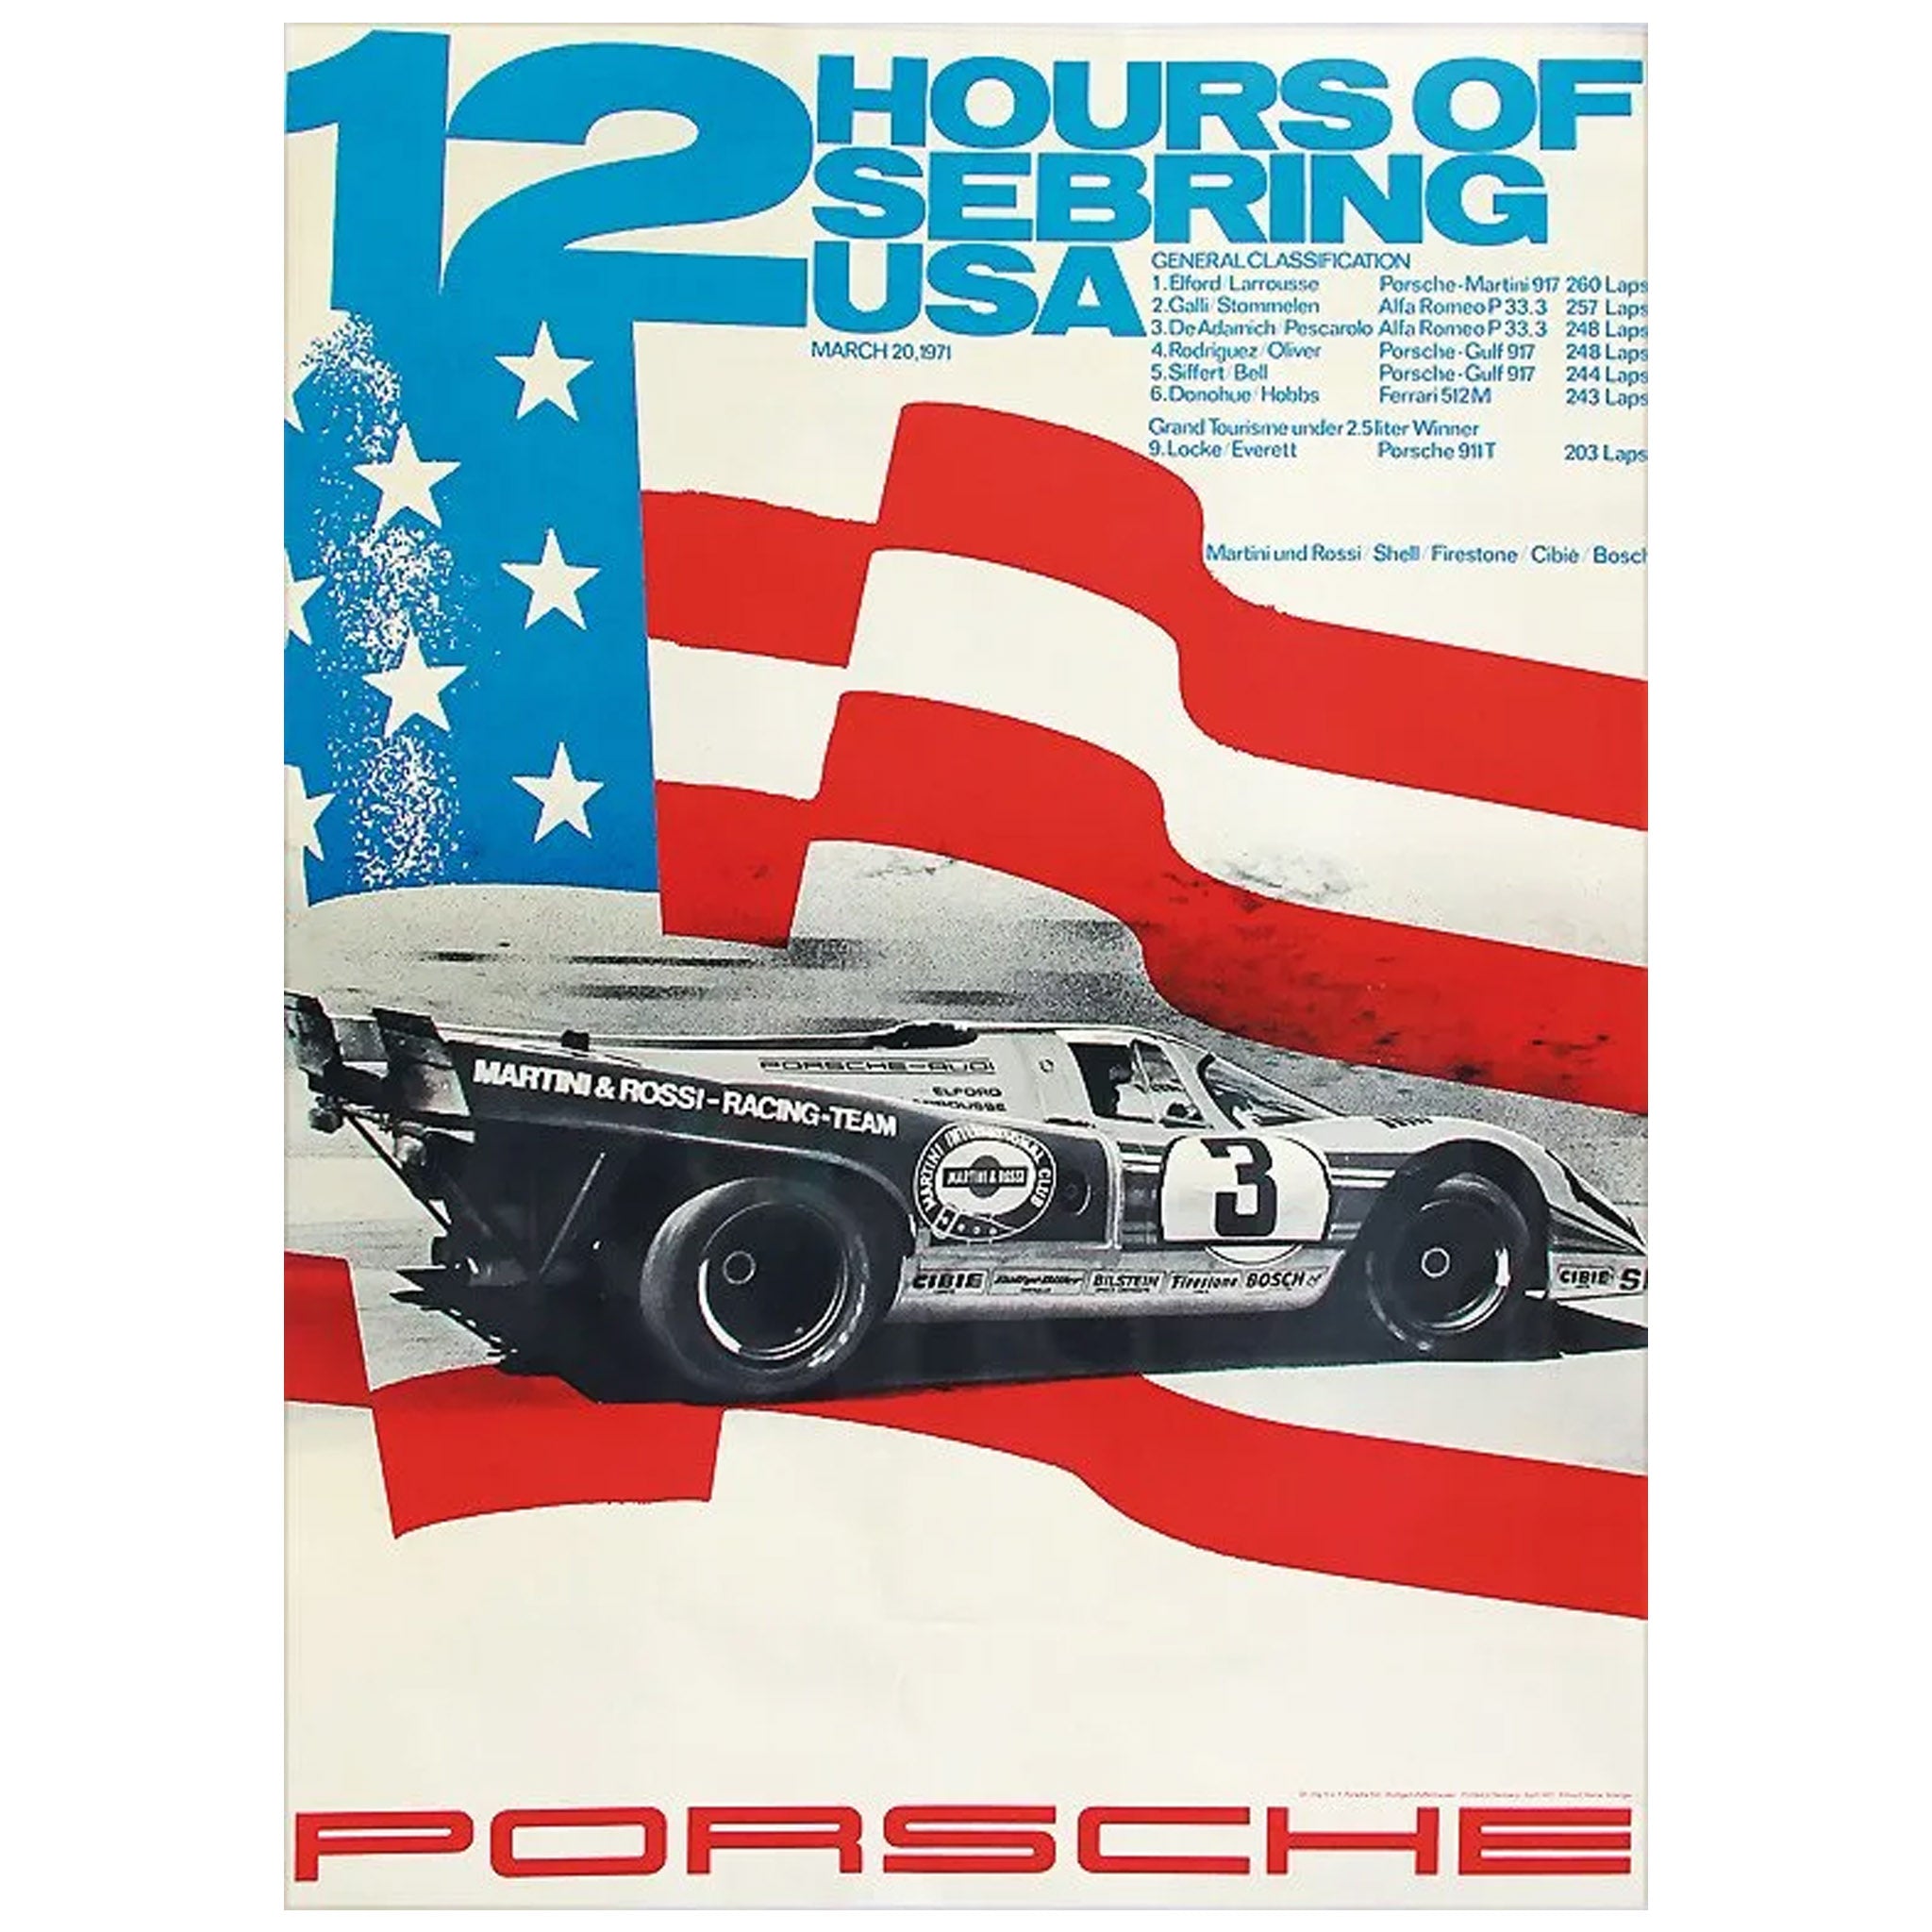 værdig Hylde beholder 12 Hours Sebring 1971 Porsche Original Poster